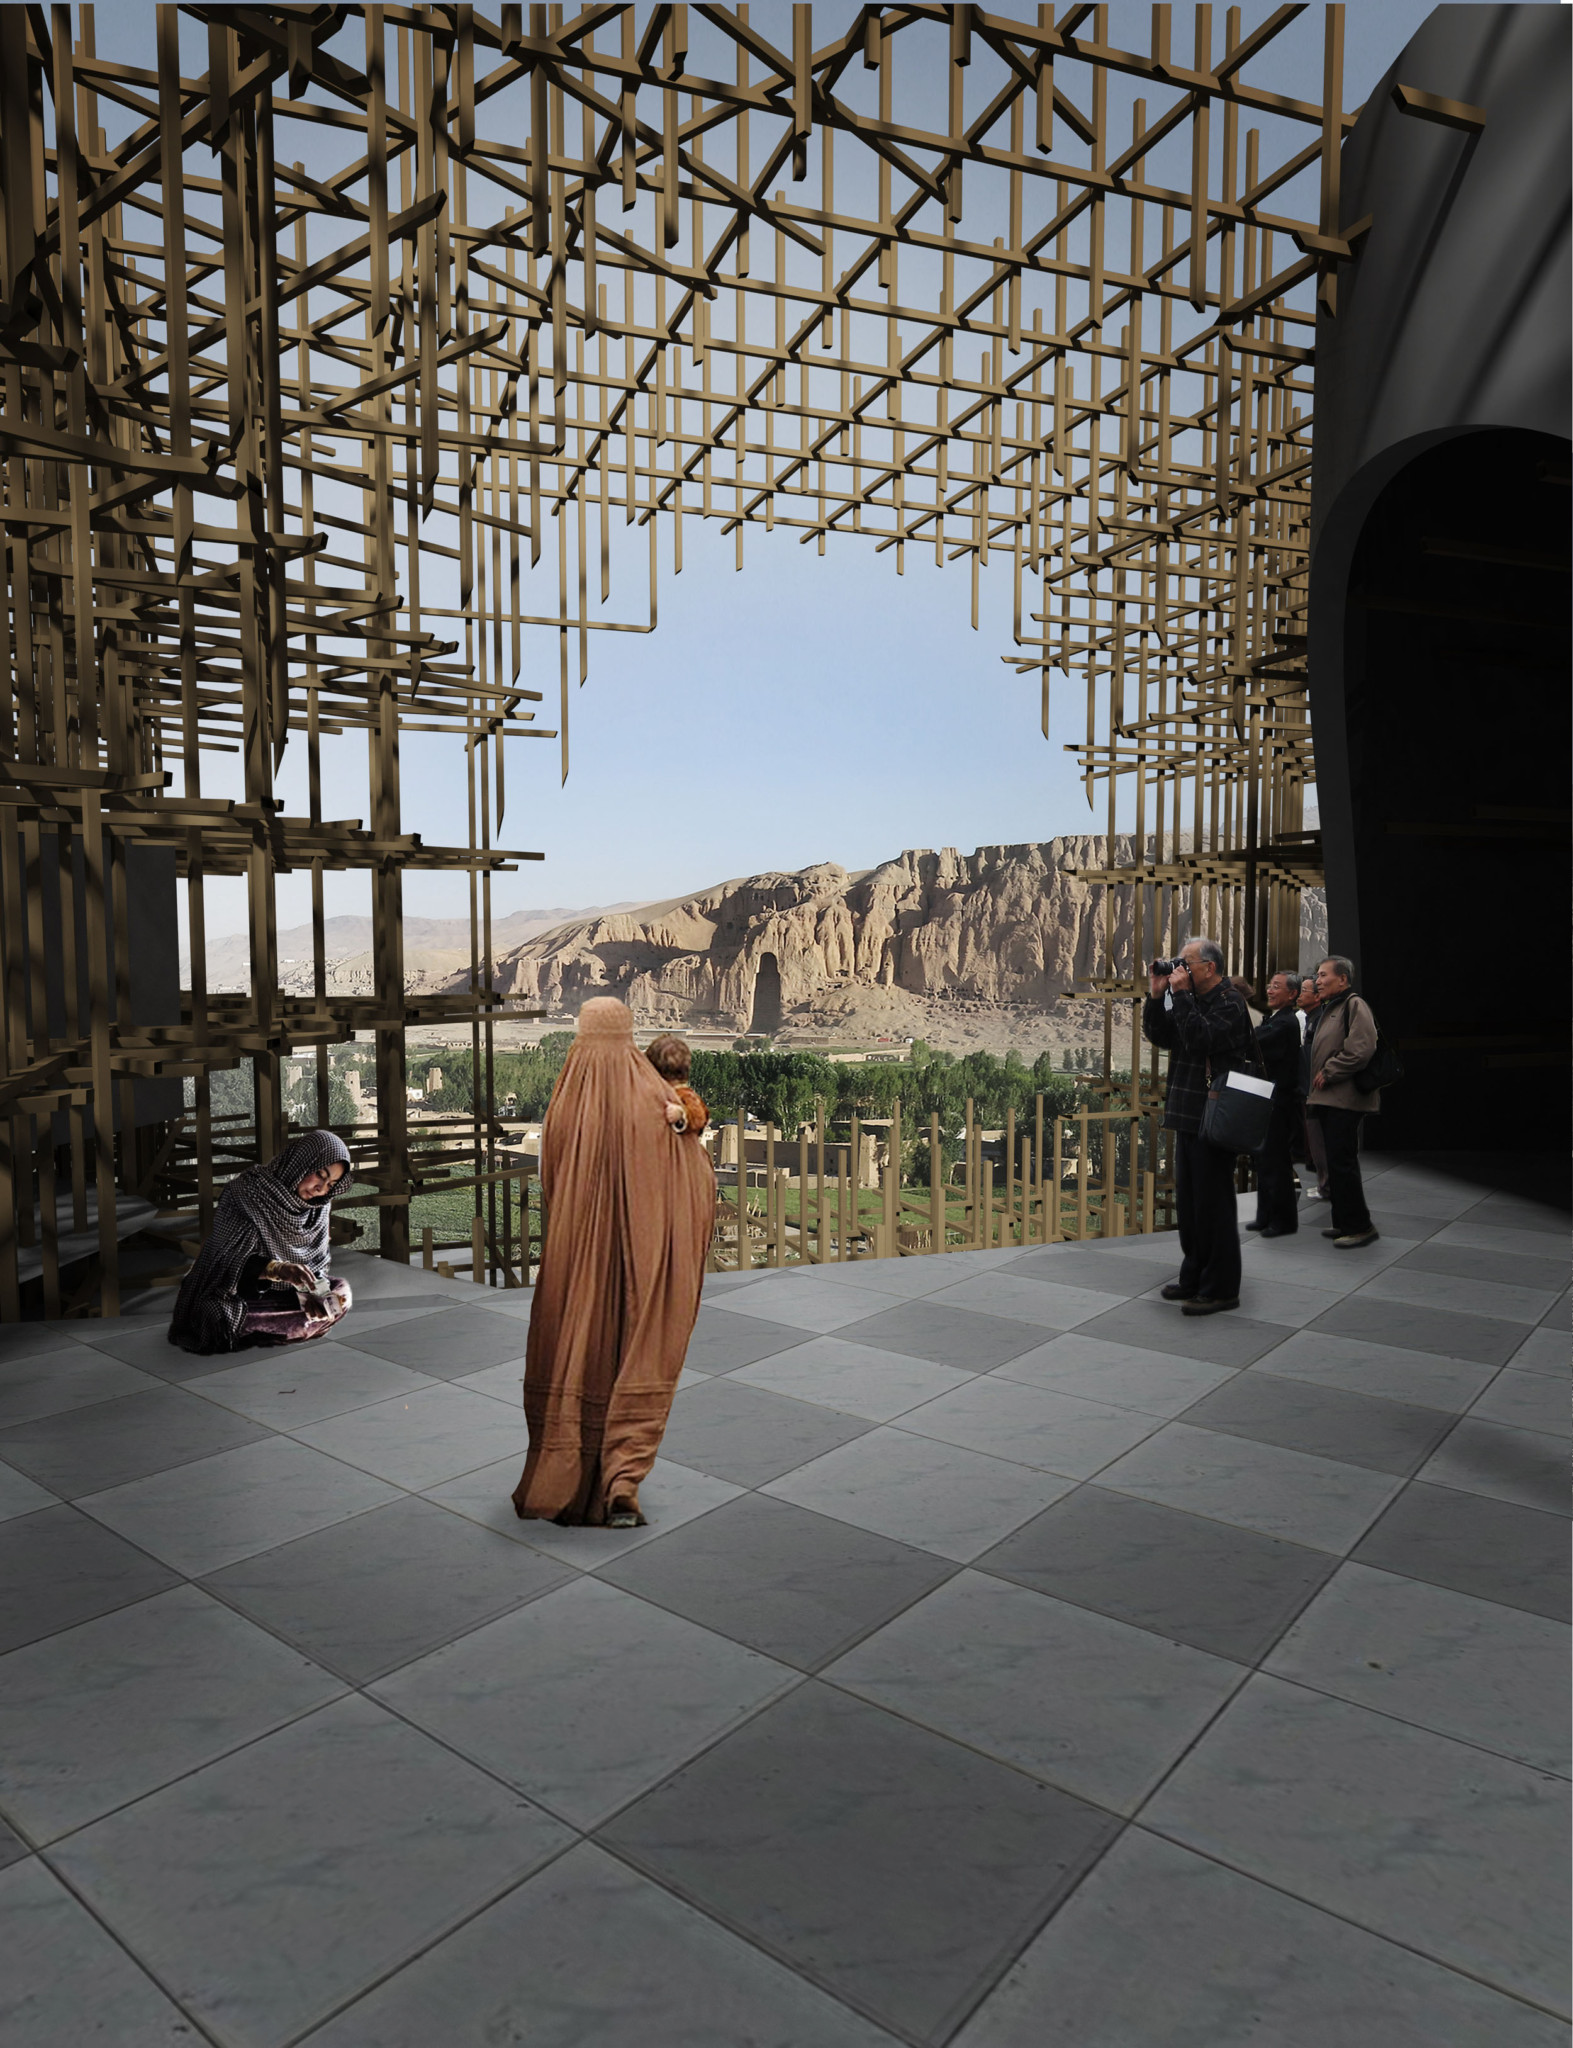 Cultural Center UNESCO Bamiyan